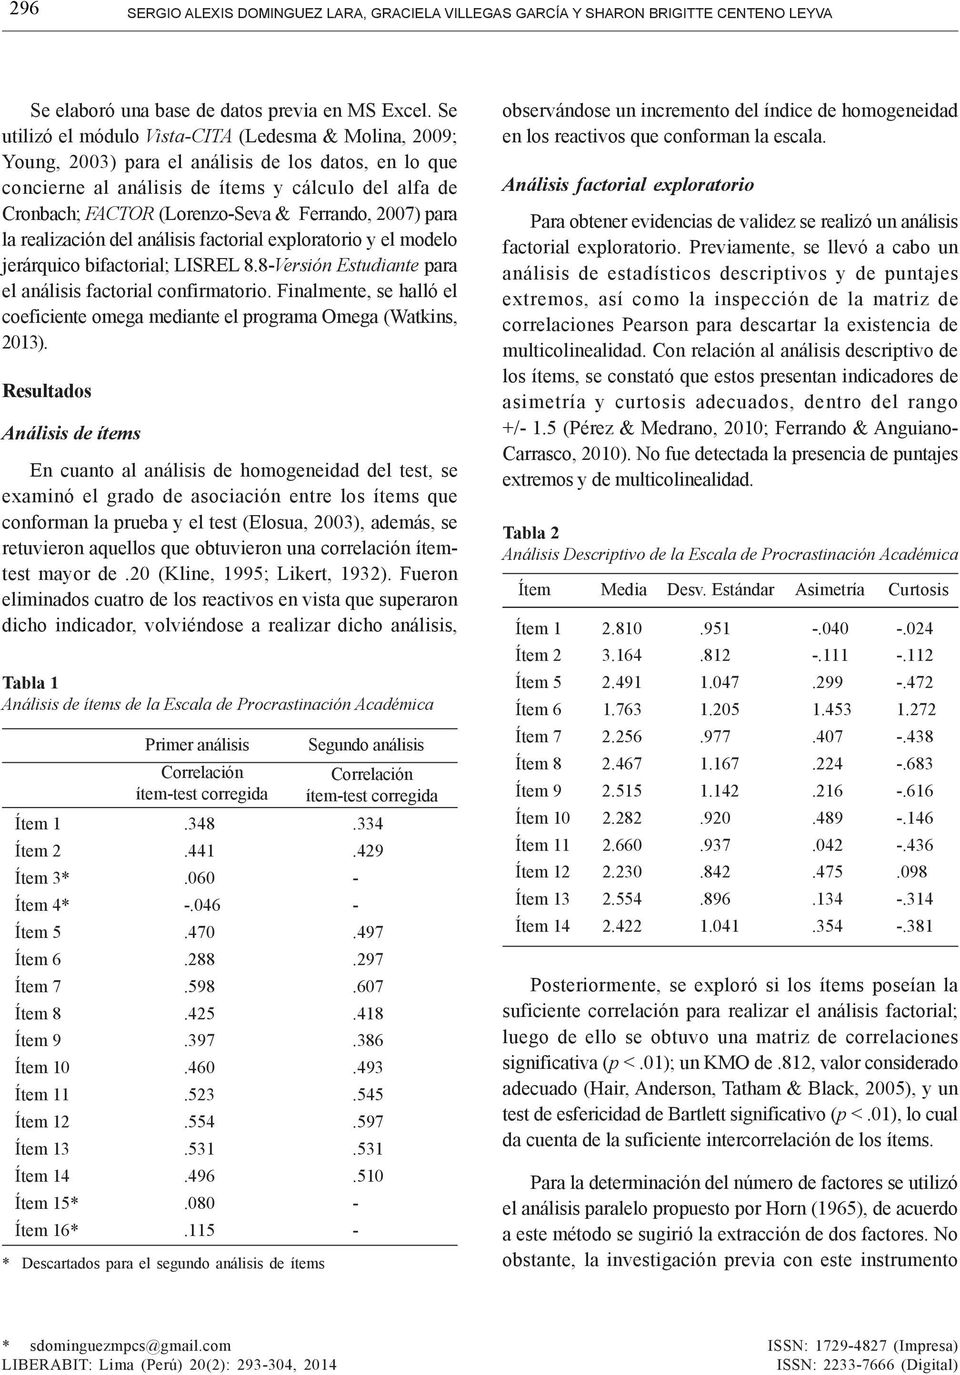 Ferrando, 2007) para la realización del análisis factorial exploratorio y el modelo jerárquico bifactorial; LISREL 8.8-Versión Estudiante para el análisis factorial confirmatorio.